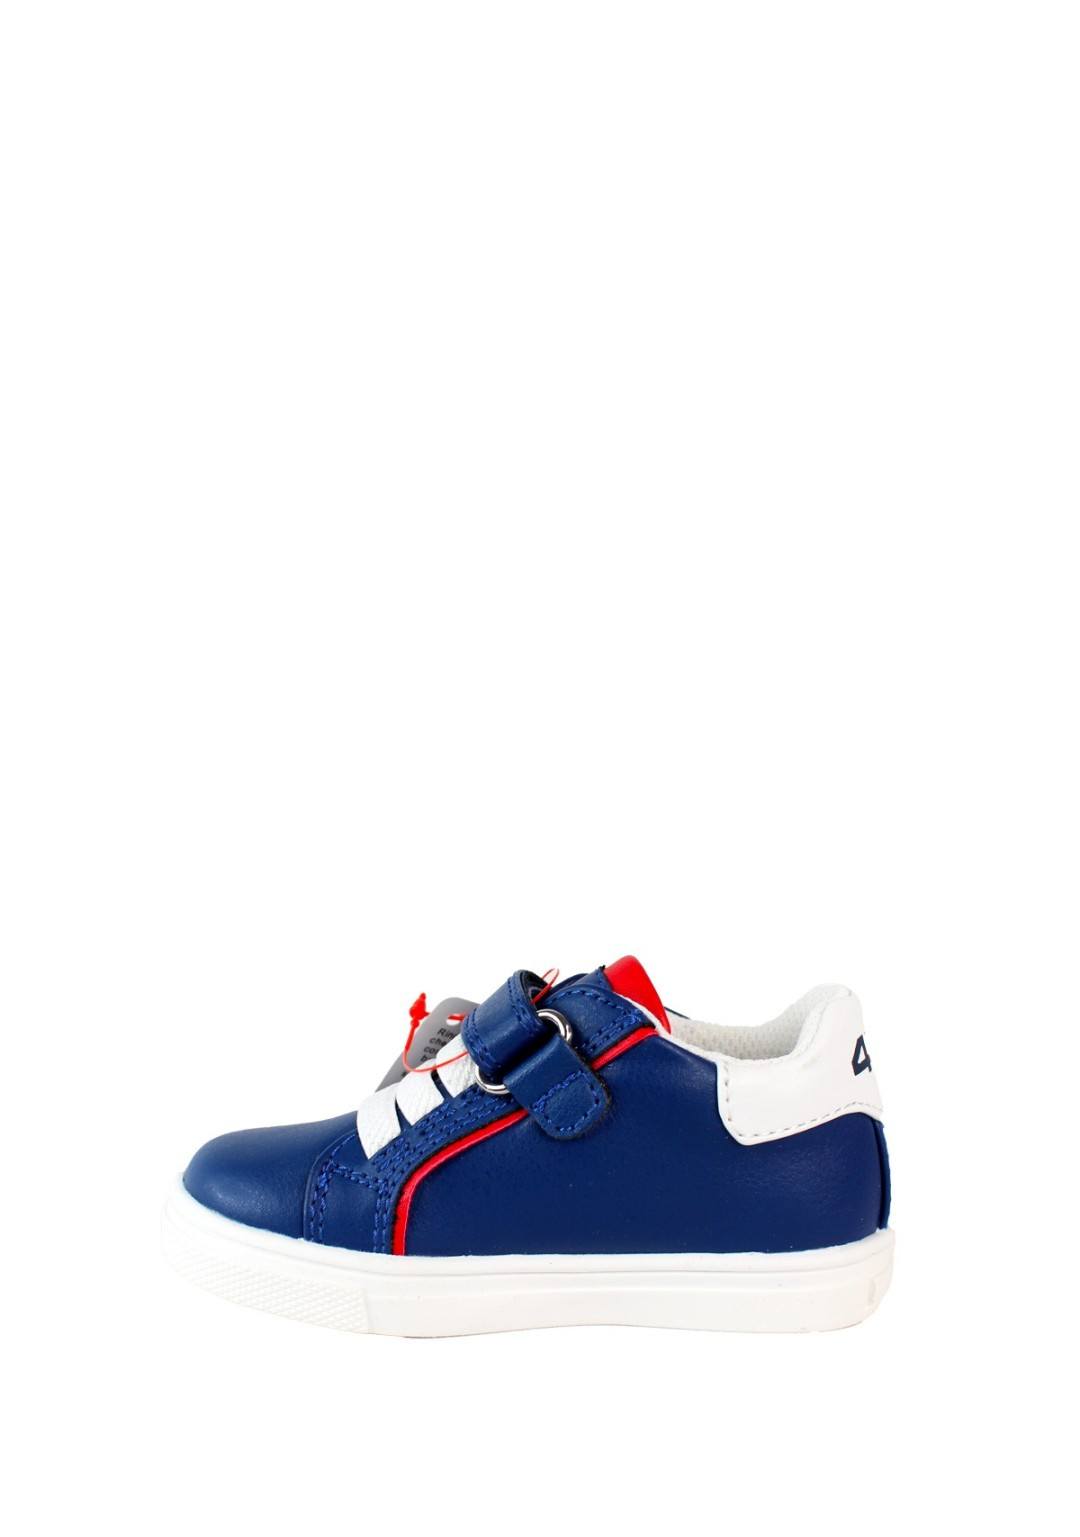 4US - Sneaker Strappo - Bambini e ragazzi - 42470 B